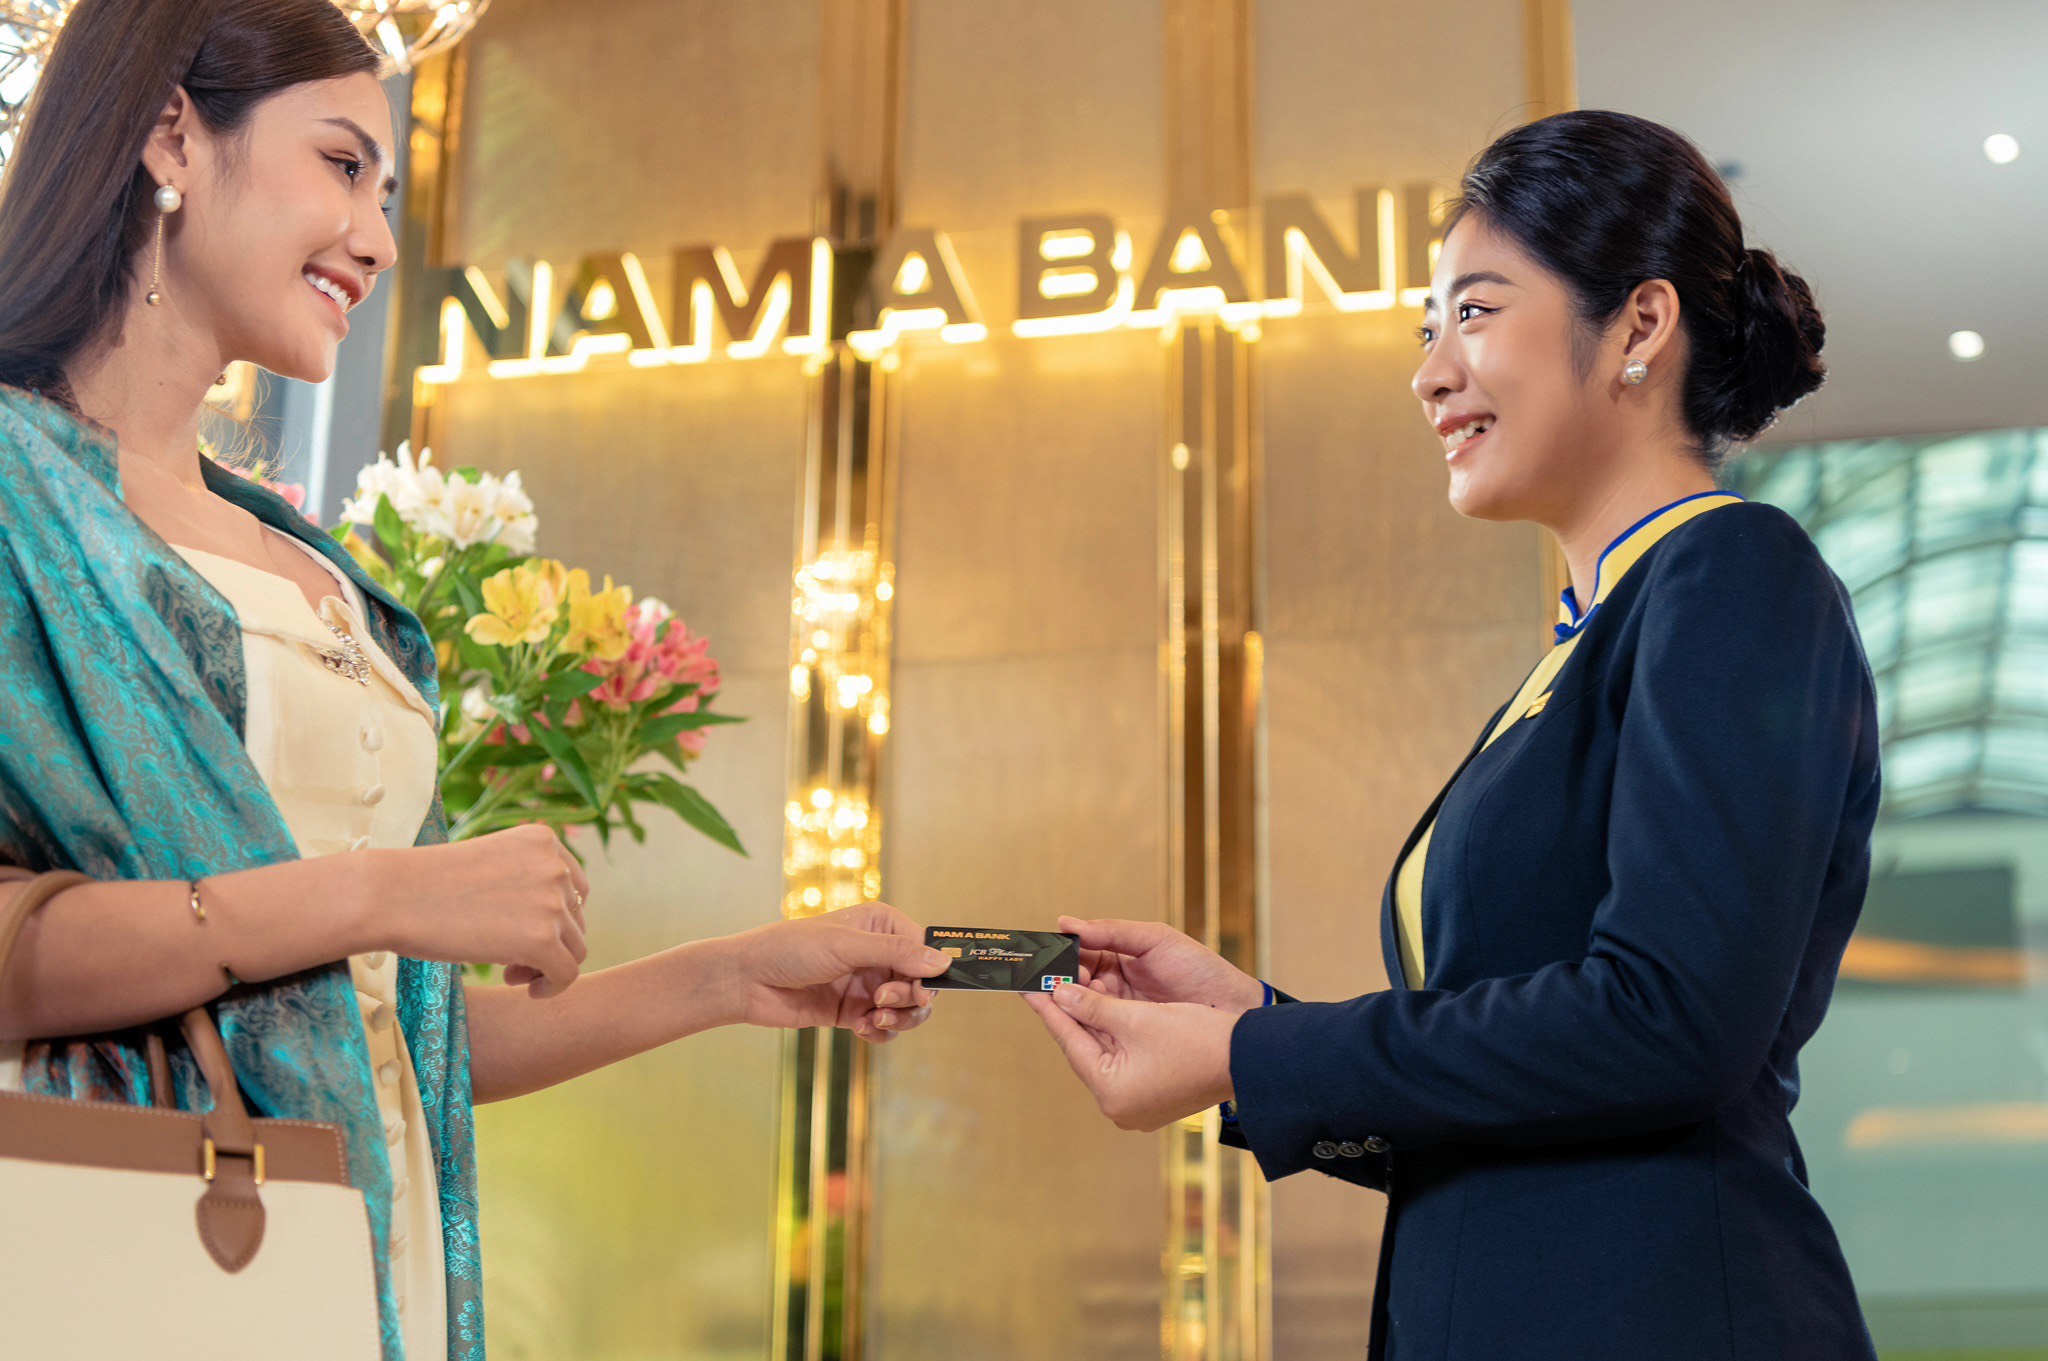 Chủ thẻ tín dụng Nam A Bank sở hữu nhiều đặc quyền ưu đãi hấp dẫn. Ảnh: Vinh Nguyễn